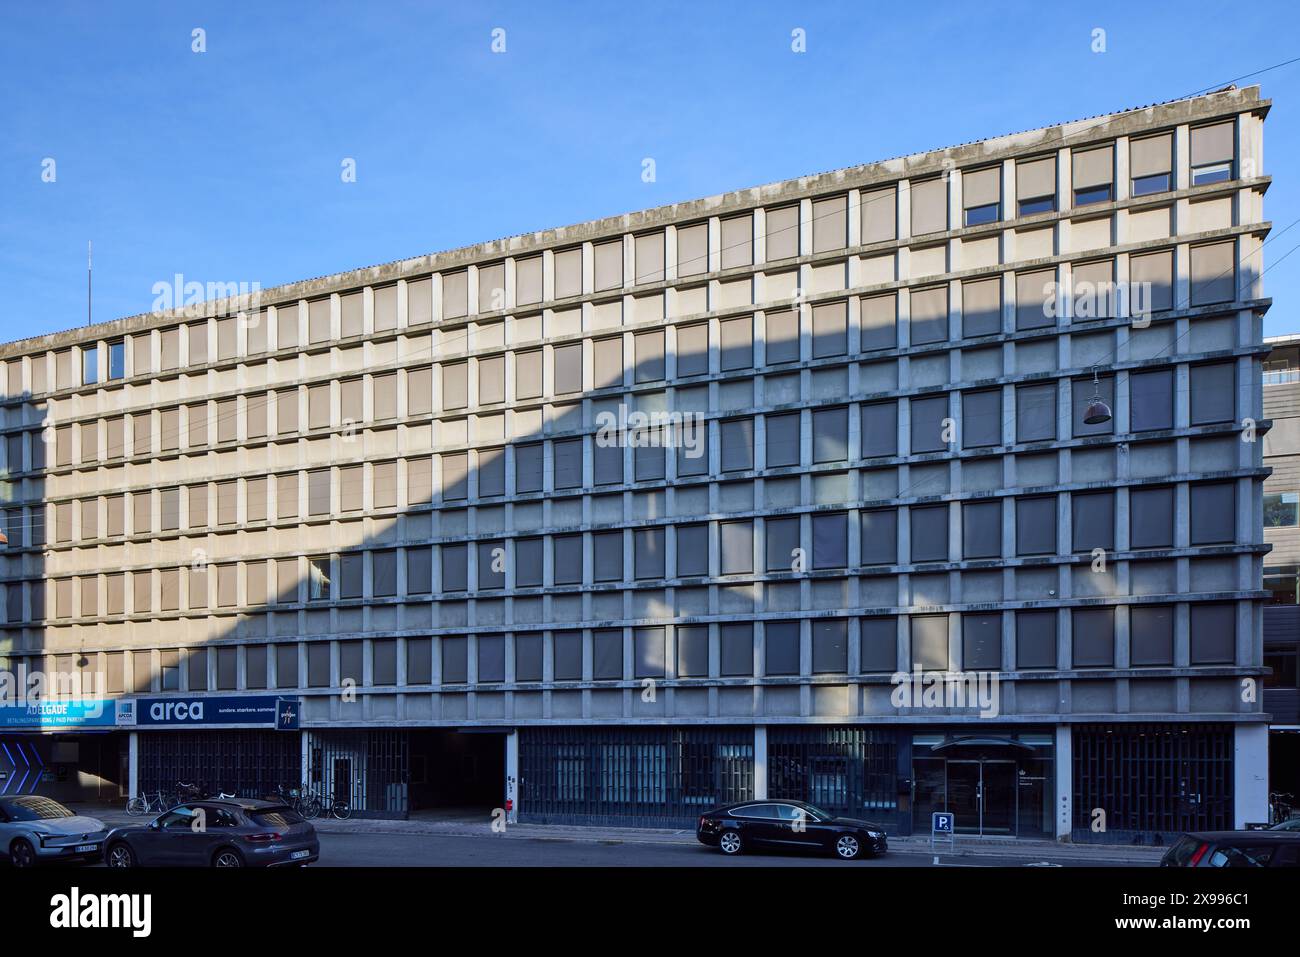 Adelgade 11-13, edificio per uffici e parcheggio dal 1963; Copenaghen, Danimarca Foto Stock